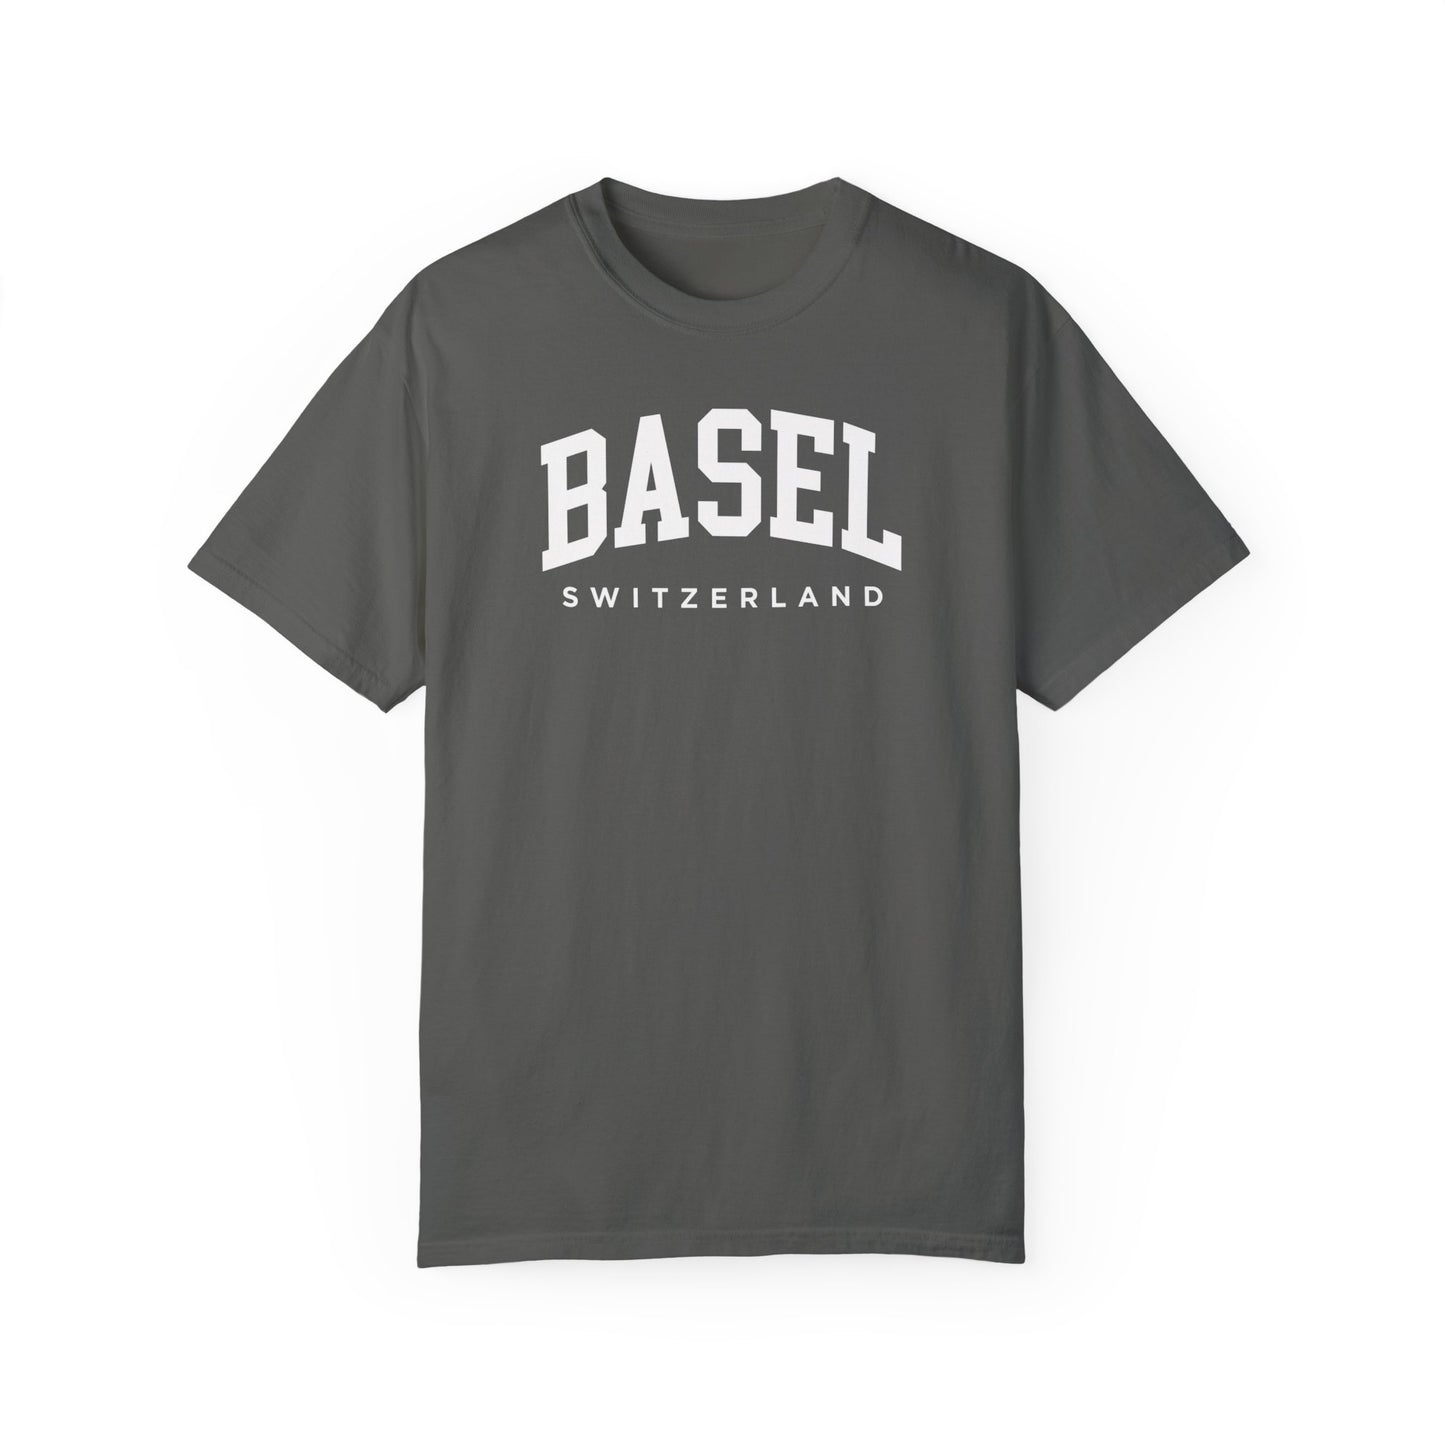 Basel Switzerland Comfort Colors® Tee